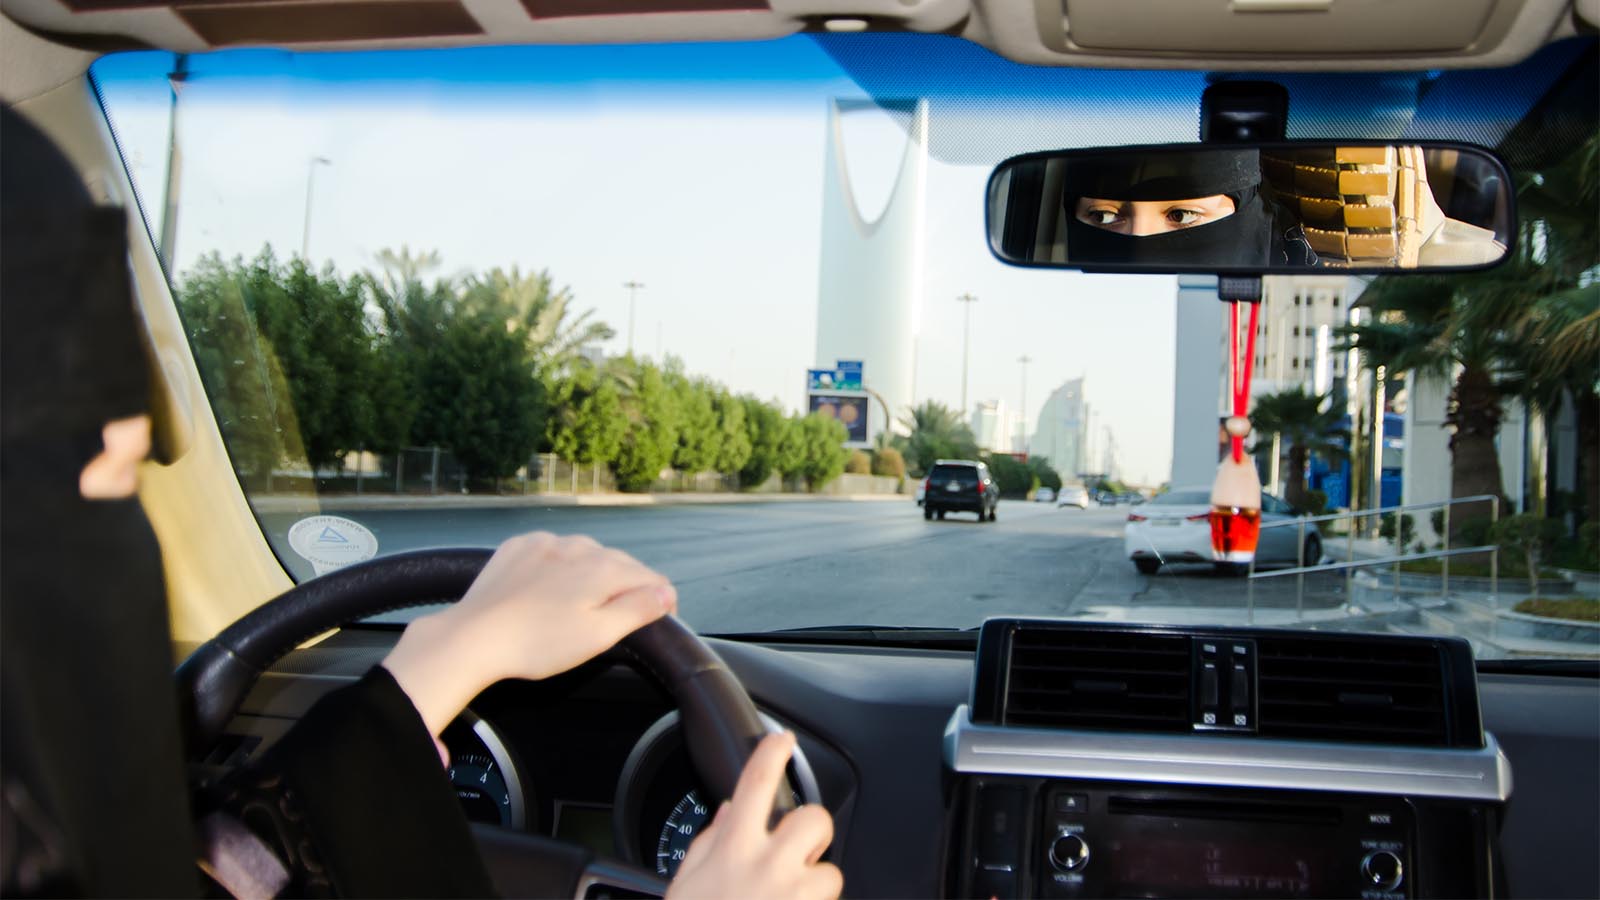 אישה נוהגת ברכב בערב הסעודית. האיסור בוטל, אבל אל-הד'לול נותרה בכלא (צילום: Shutterstock)